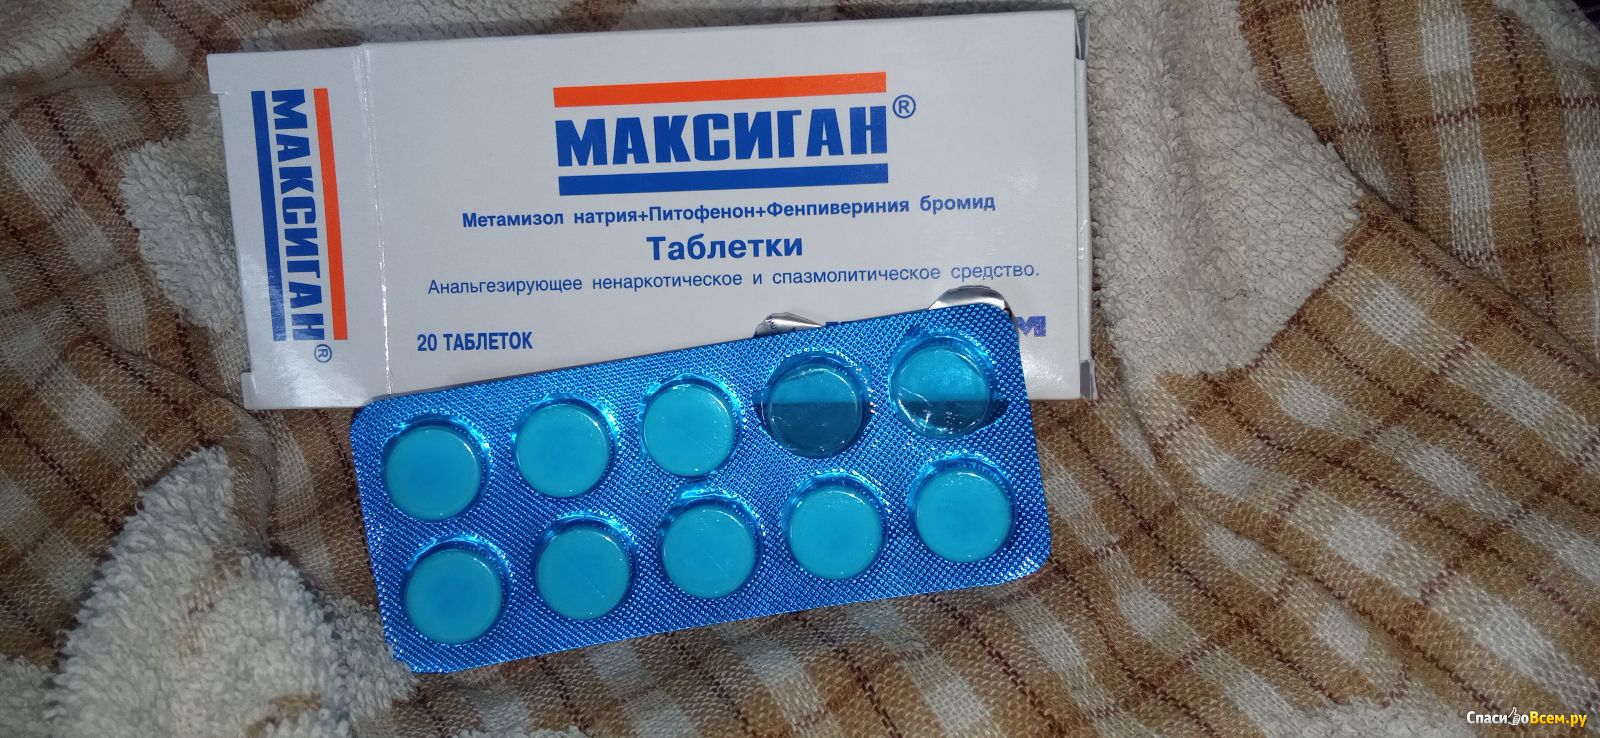 Обезболивающие таблетки. Максиган таблетки. Обезболивающие таблетки в синей упаковке. Недорогое обезболивающее в таблетках. Можно собаке давать обезболивающие таблетки